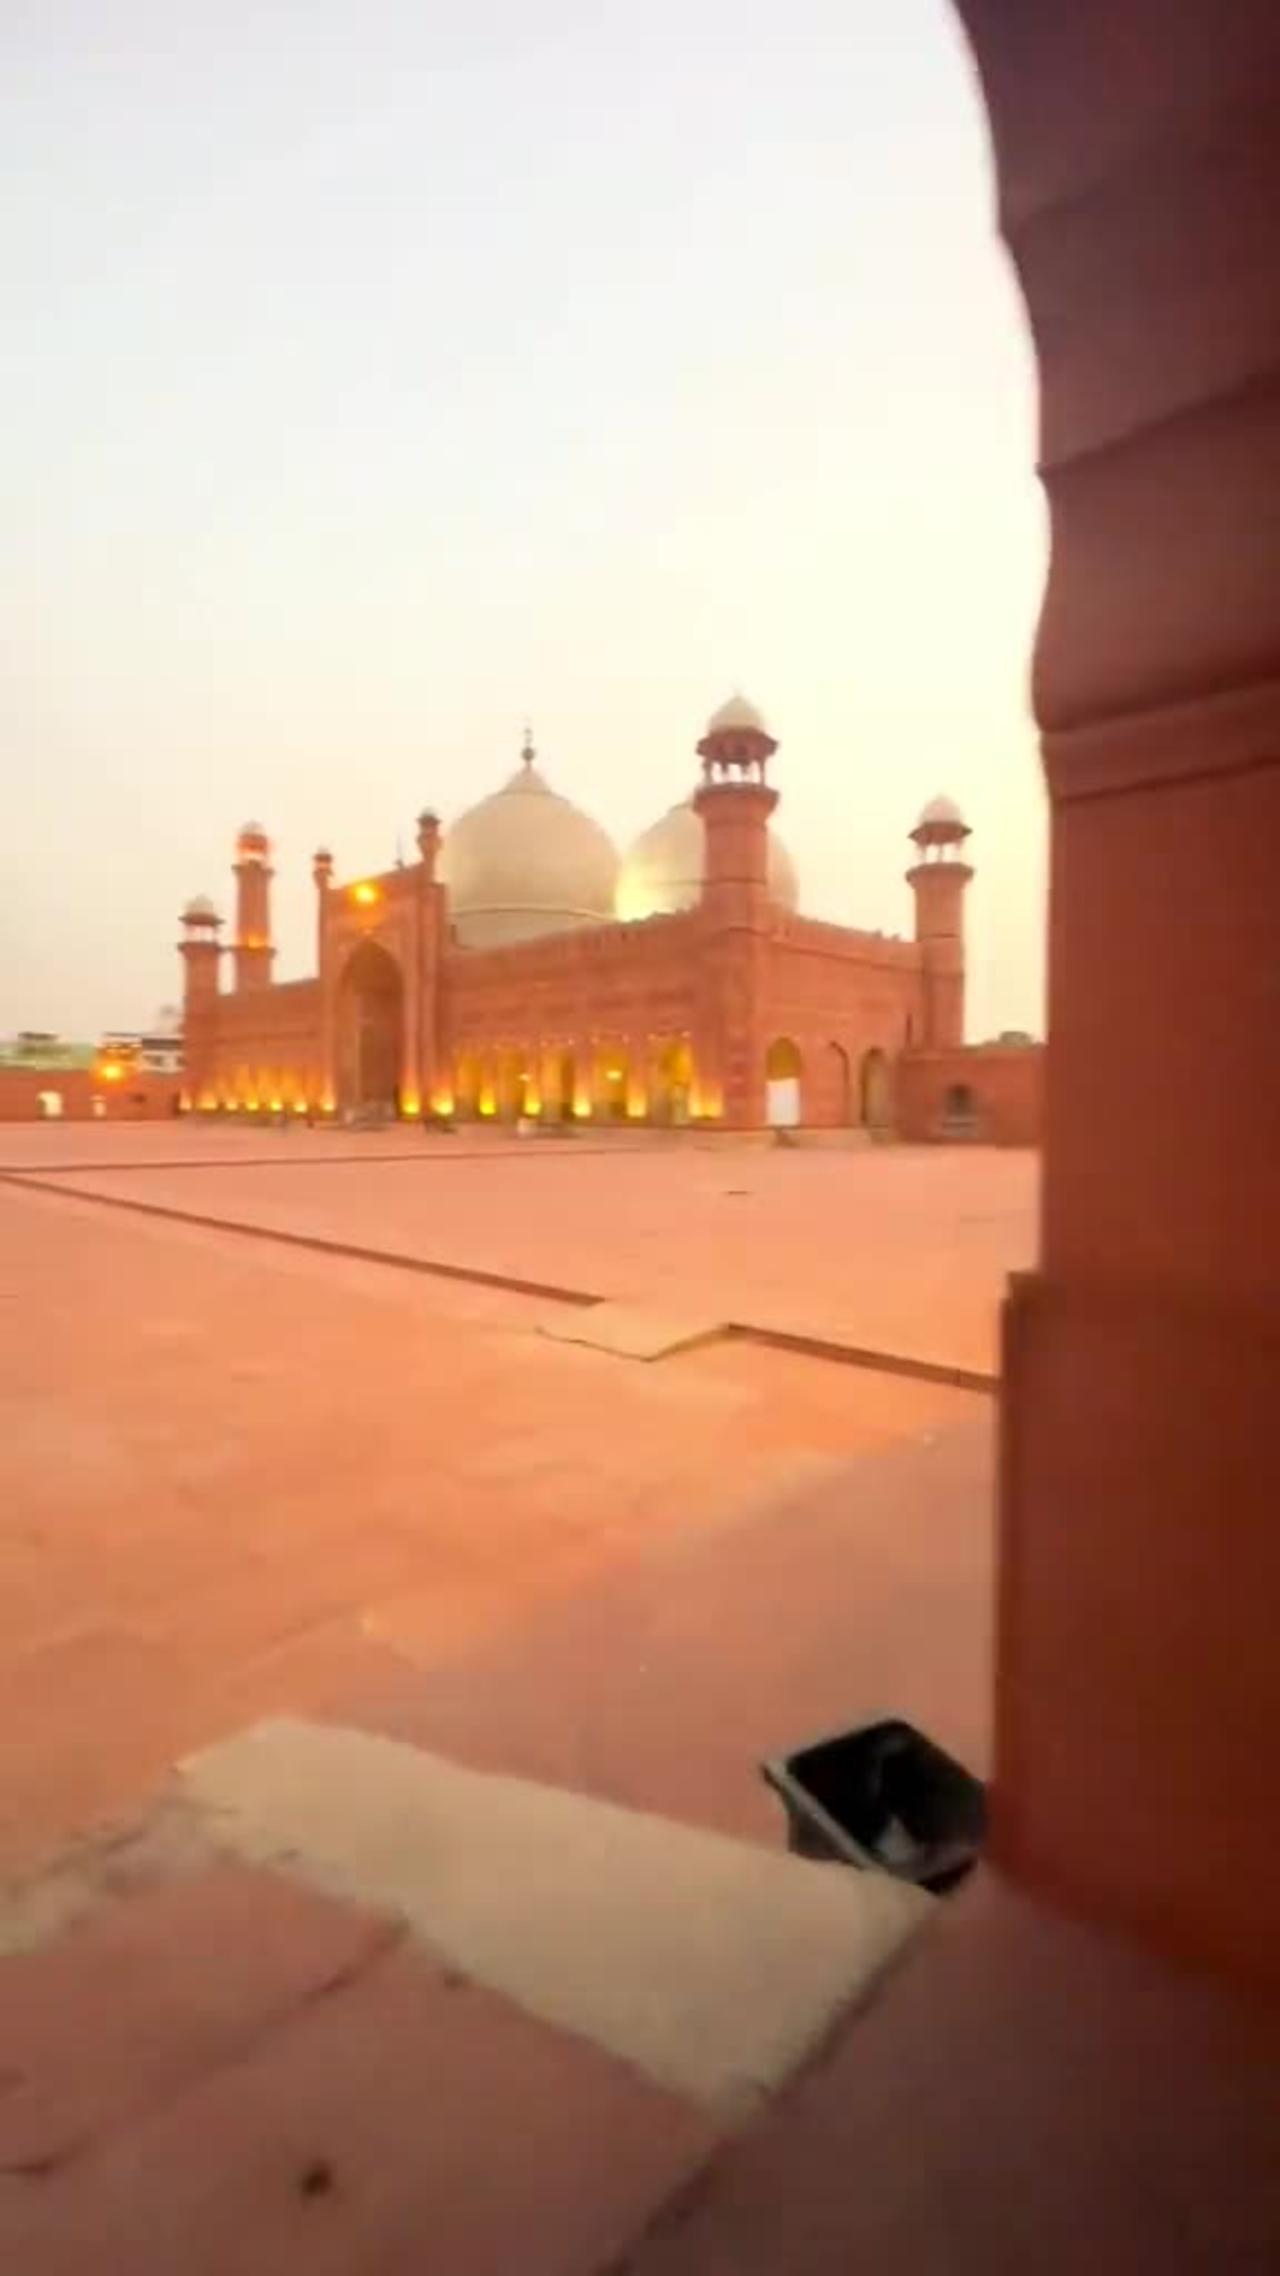 I'm showing you the beauty of Pakistan Bad Shahi masjid